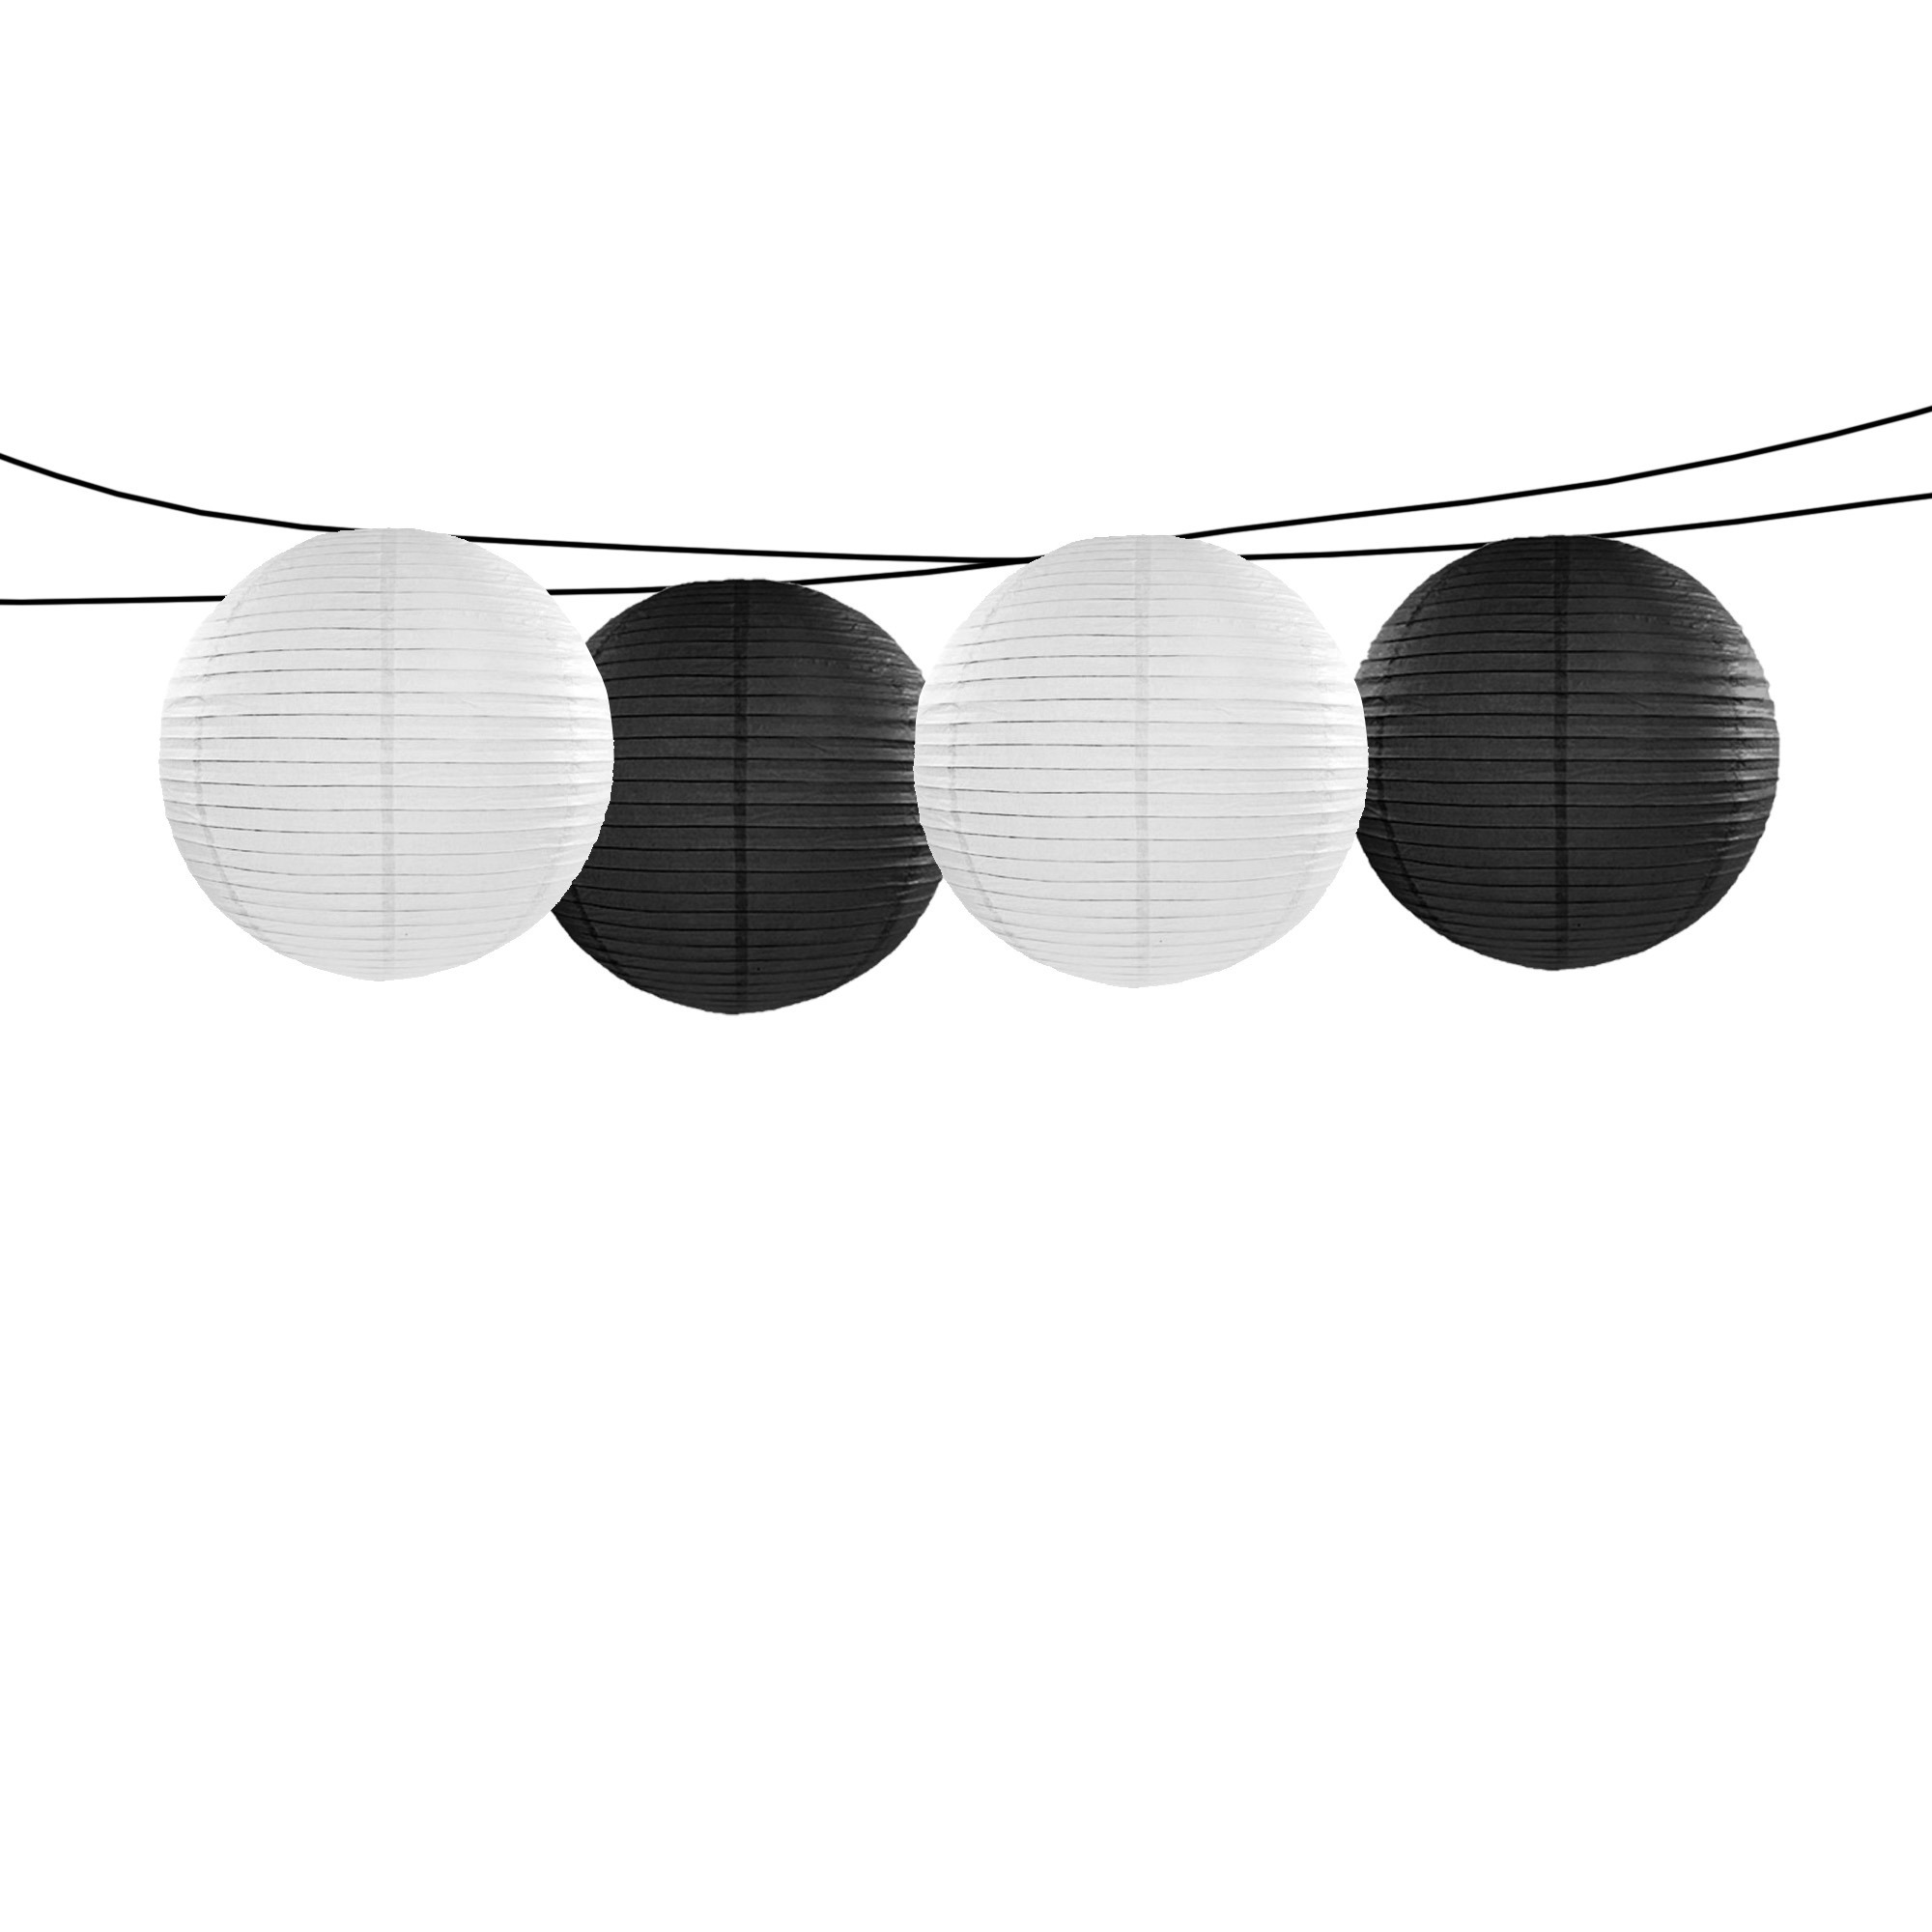 Feest-tuin versiering 4x stuks luxe bol-vorm lampionnen zwart en wit dia 35 cm